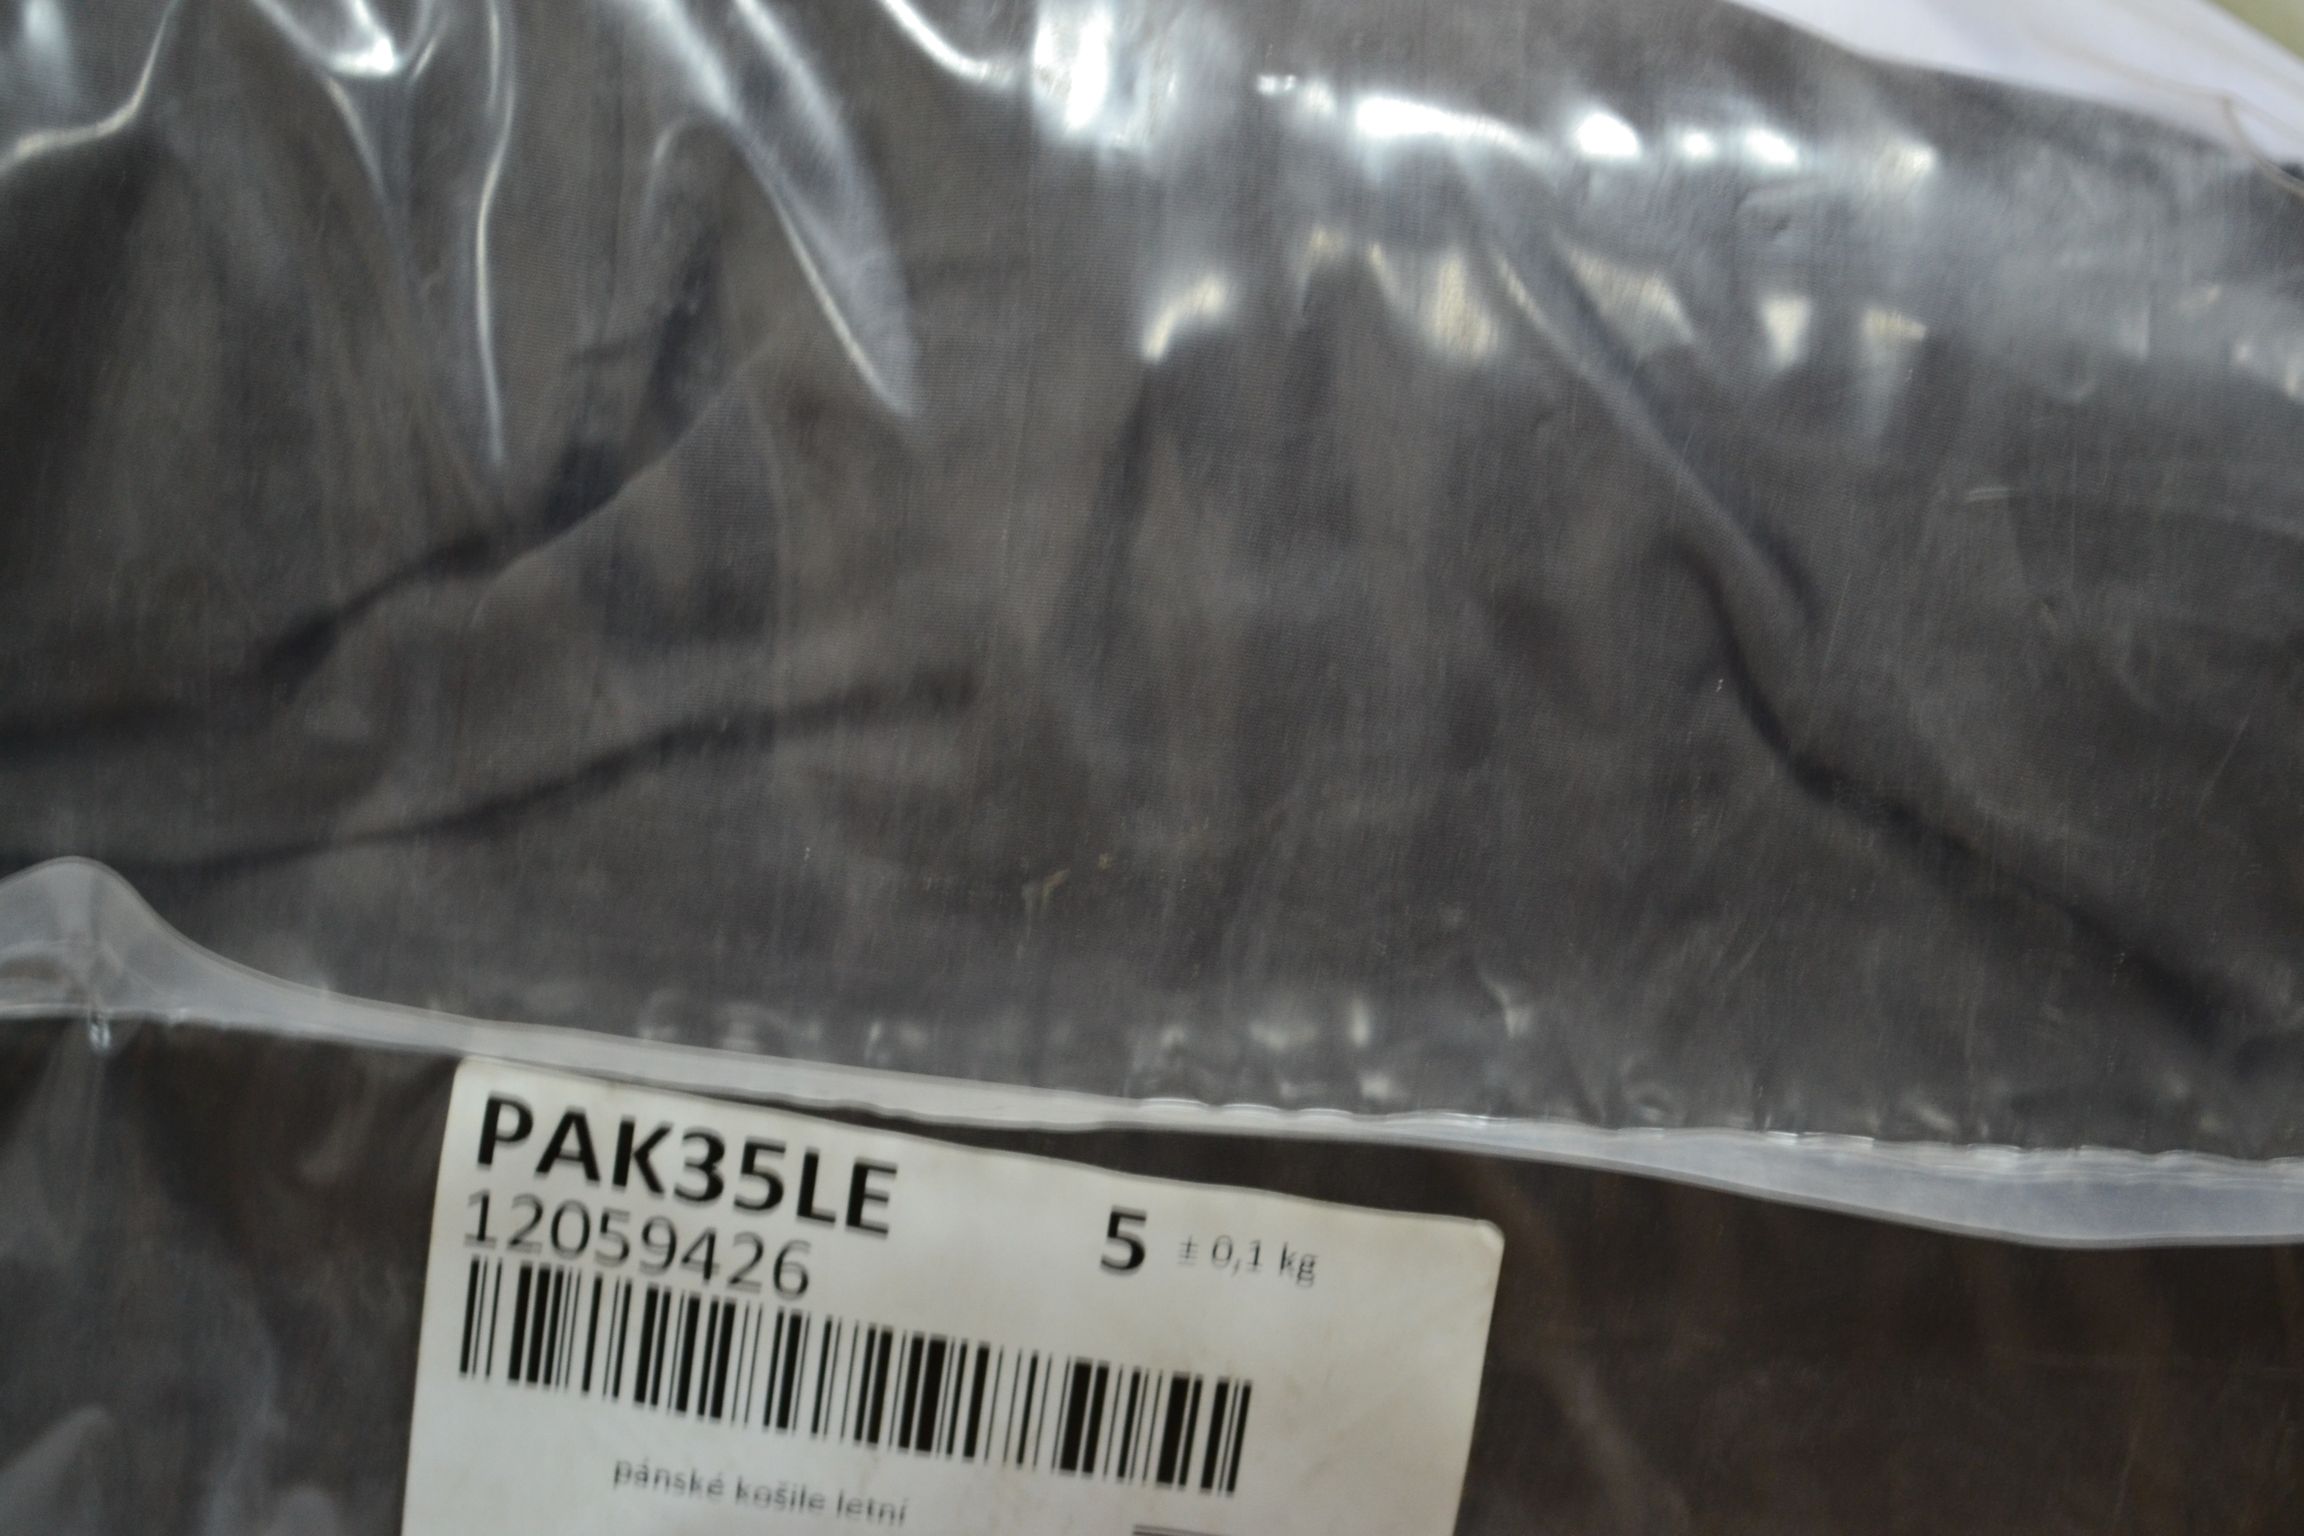 PAK35LE Летние мужские рубашки; код мешка 12059426